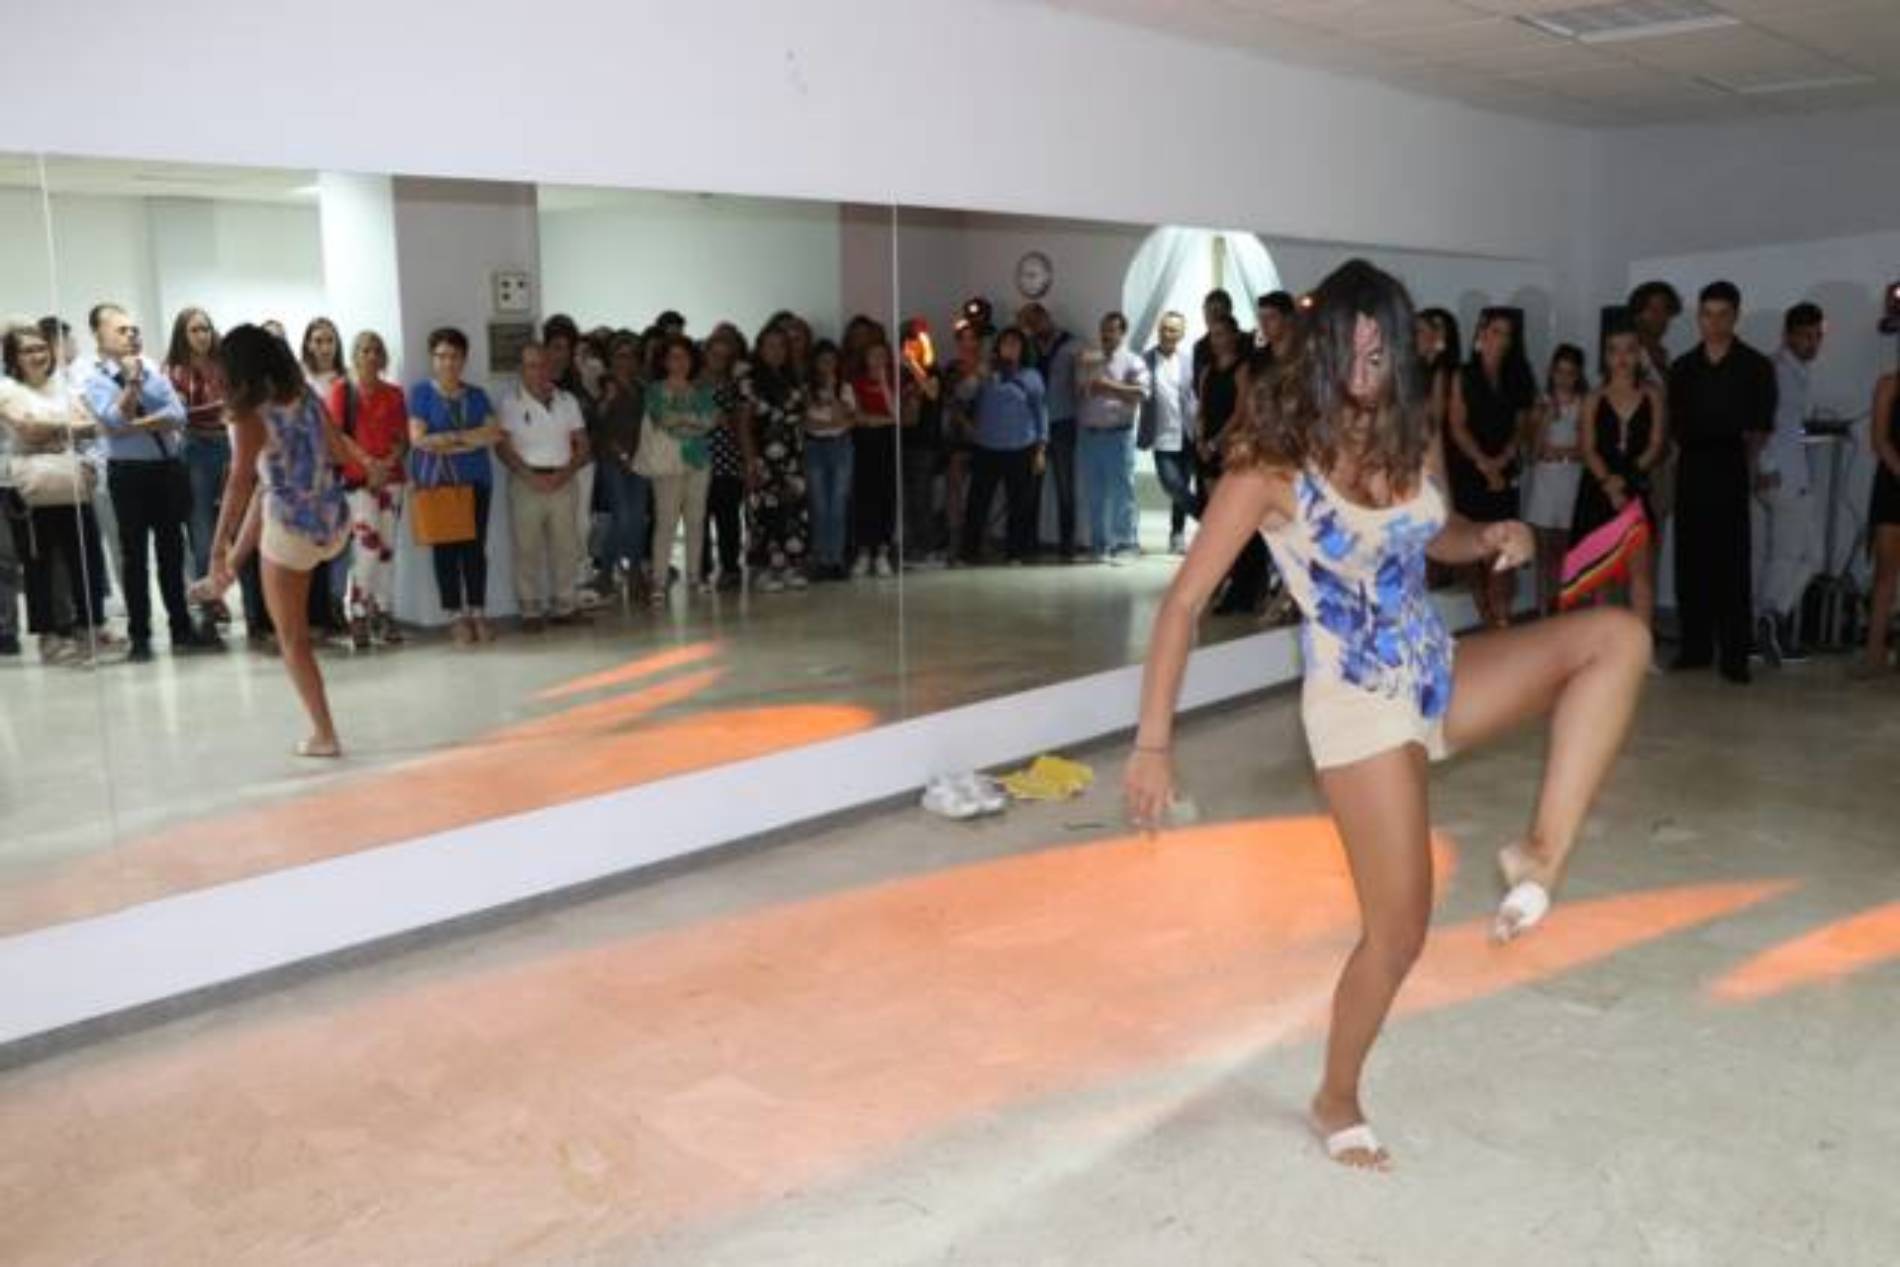 PIETRAPERZIA. Inaugurata la scuola di ballo “GS Dance” di Giada Spagnuolo”.  